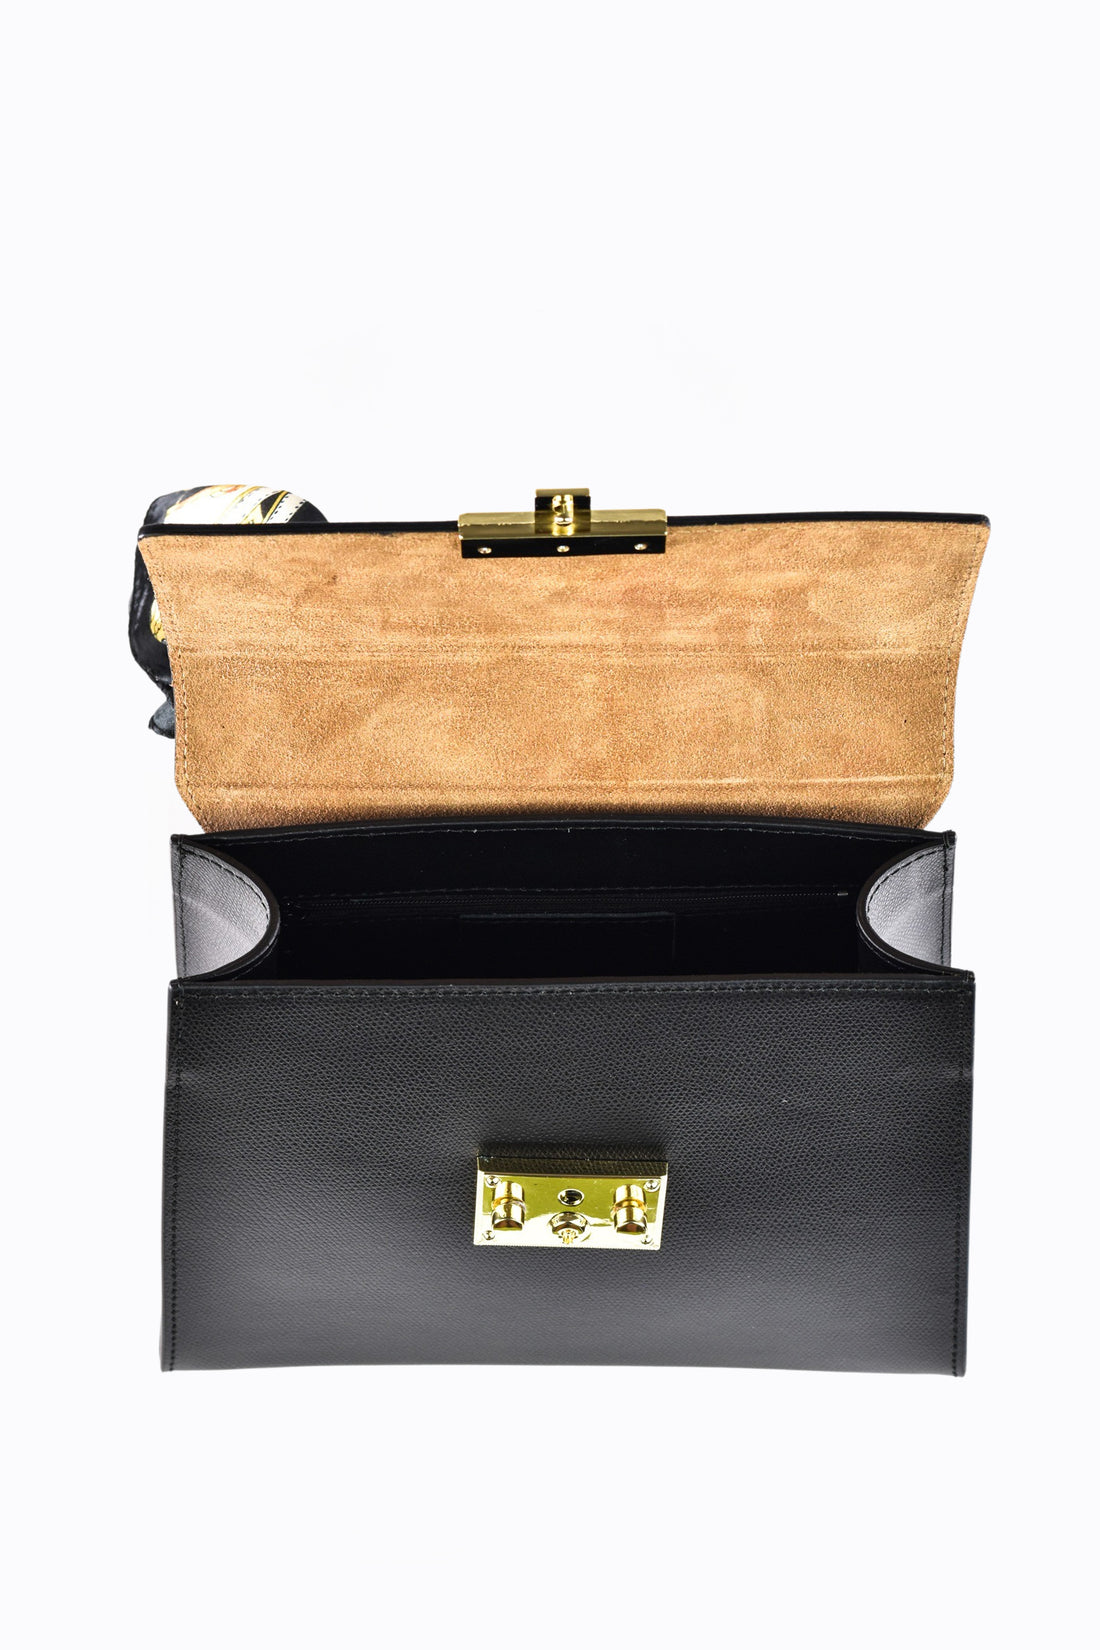 Marigold bag in black saffiano leather